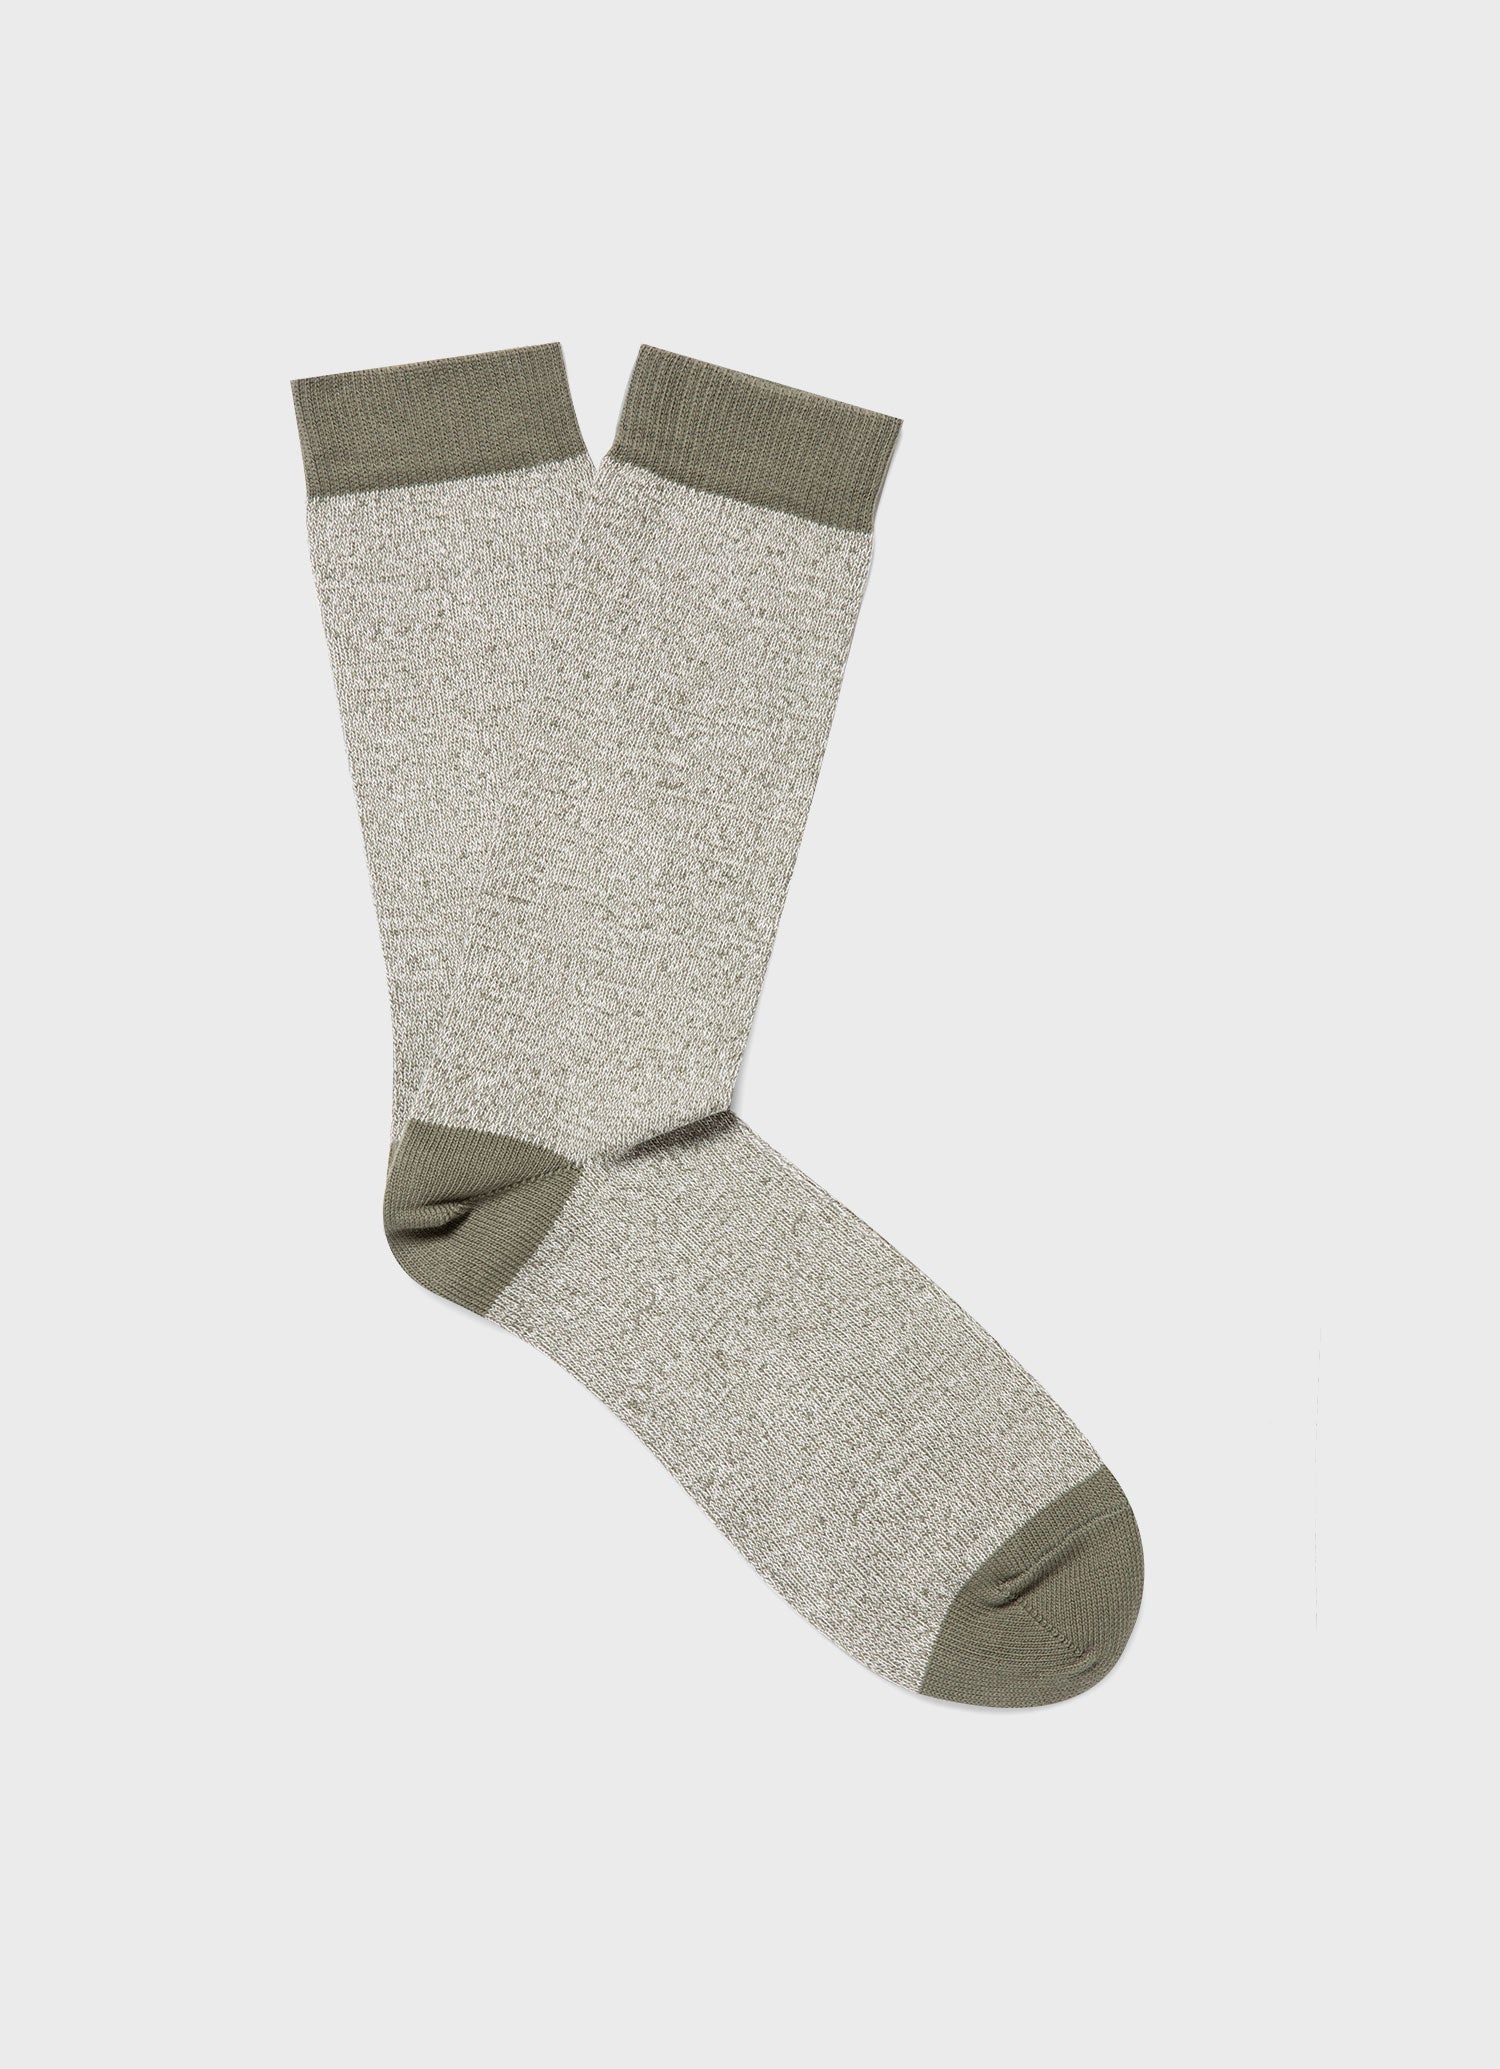 Men's Cotton Socks in Pale Khaki Twist | Sunspel